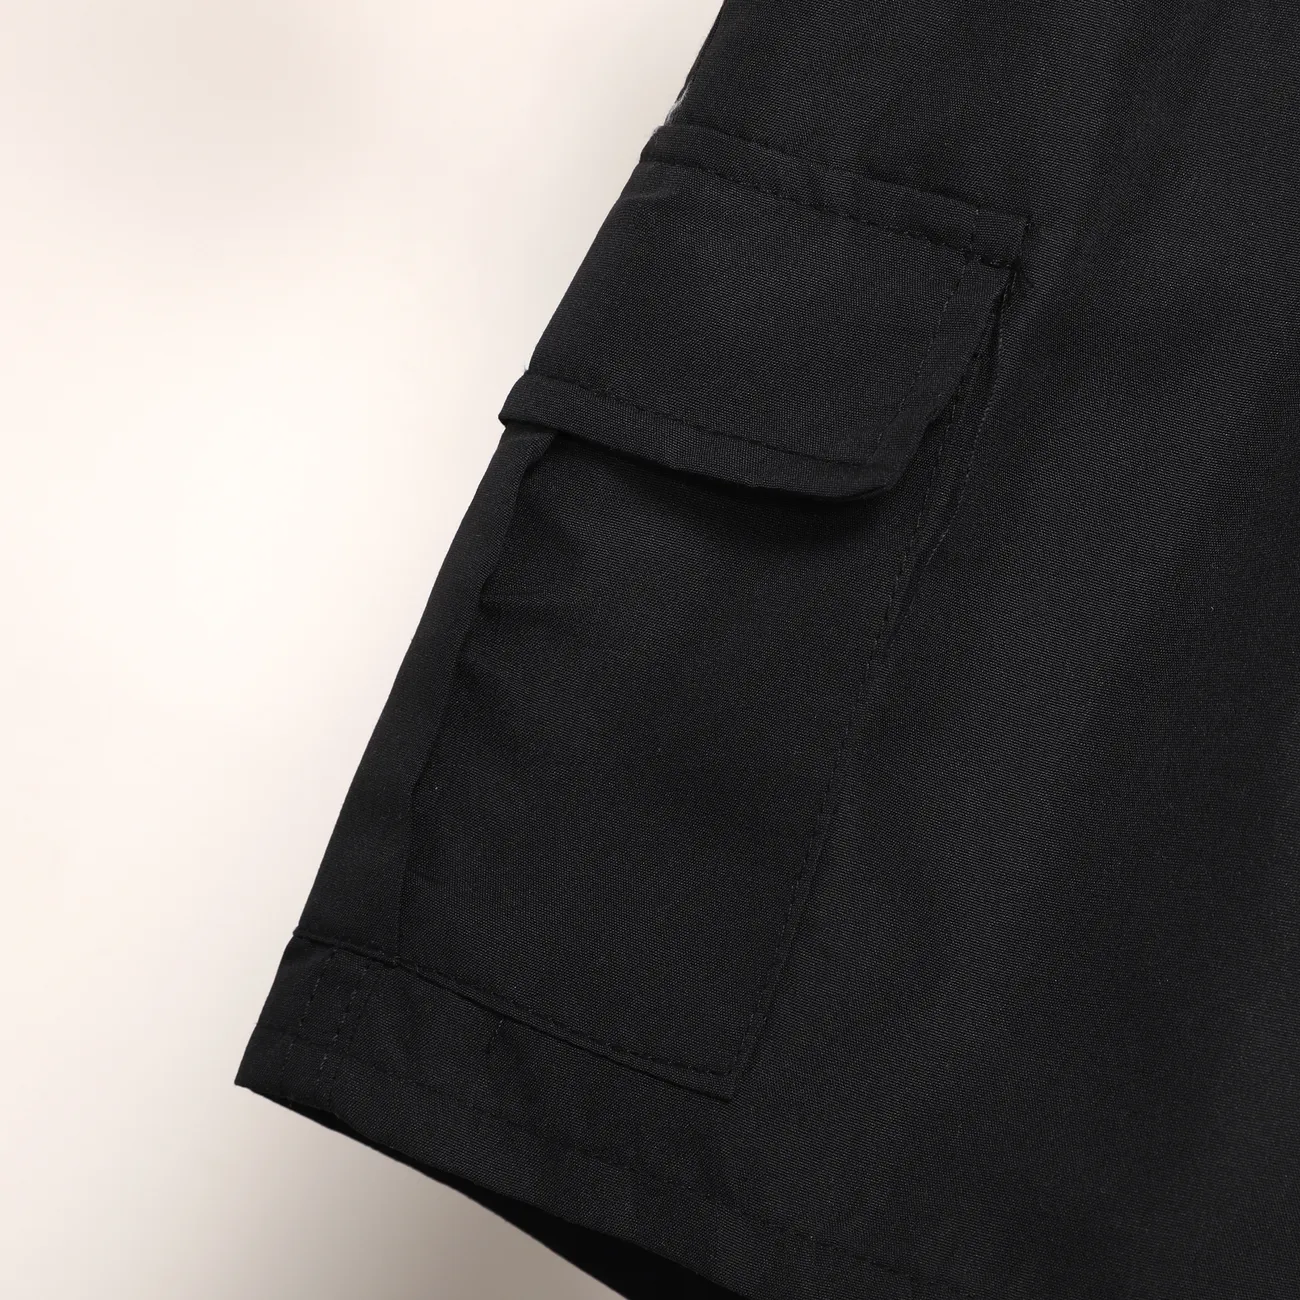 Lässige Shorts für Jungen mit aufgesetzten Taschen, 1-teiliges Set, einfarbig, 100% Polyester, maschinenwaschbar schwarz big image 1